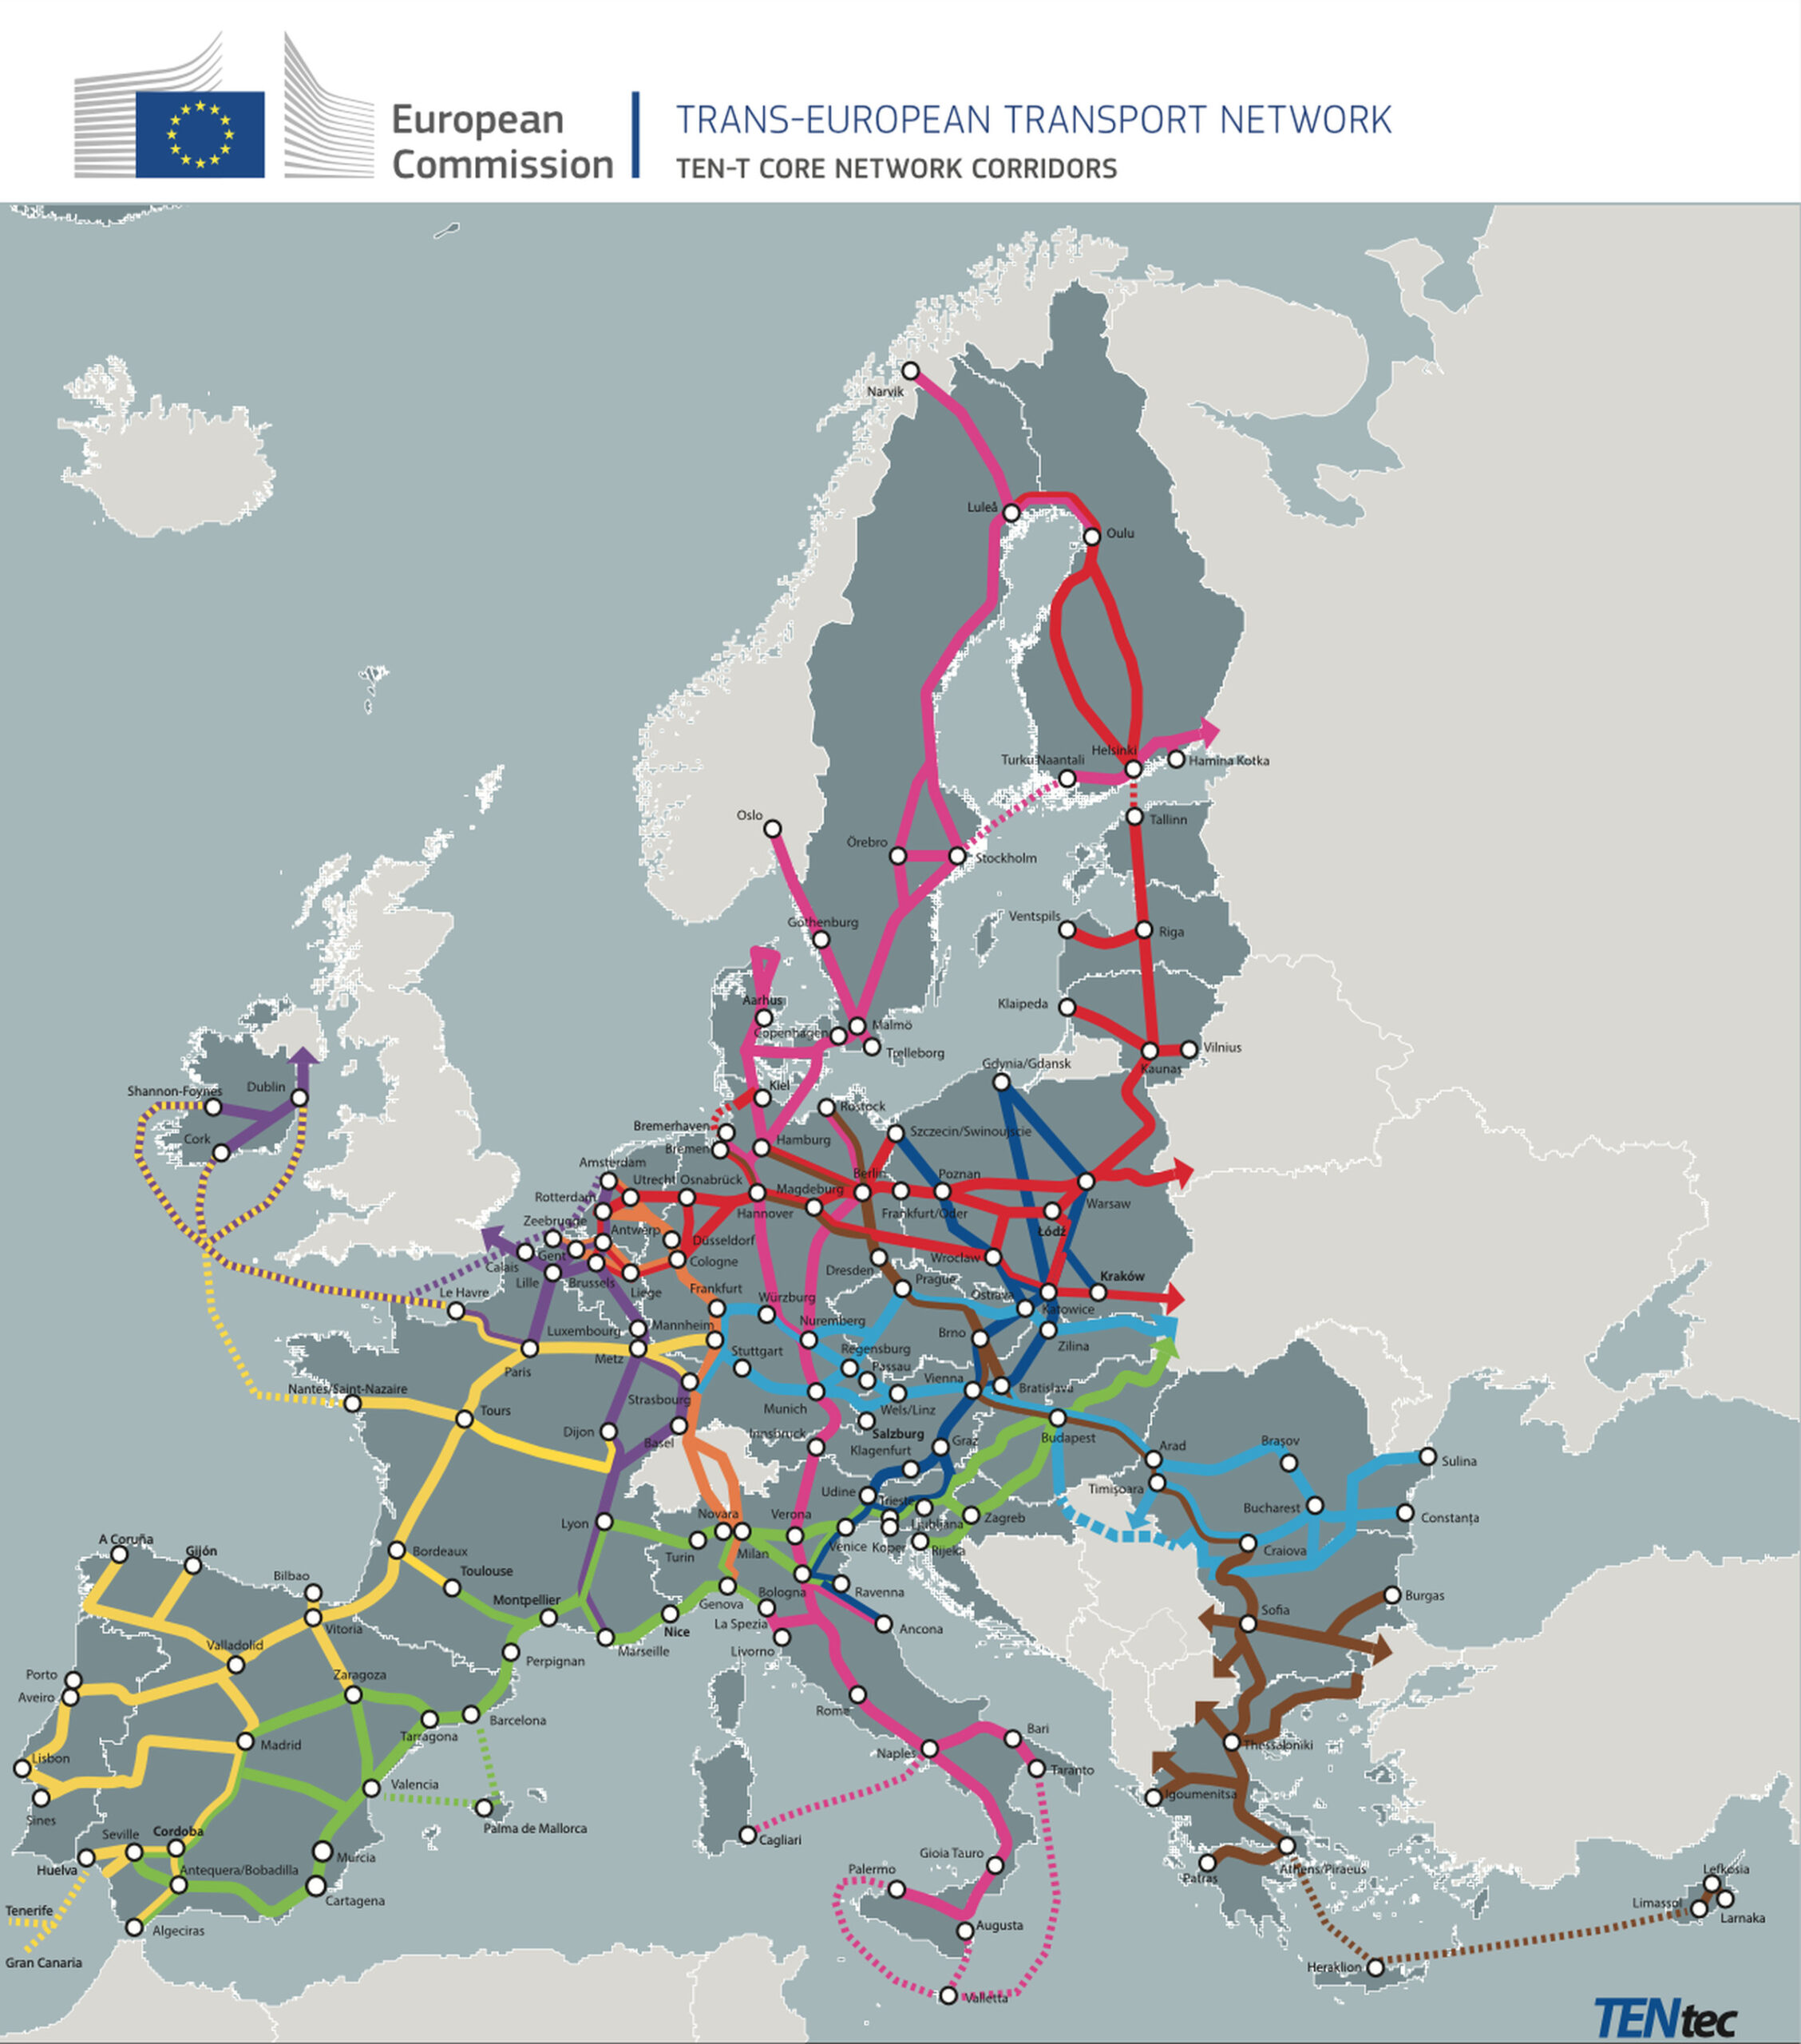 Europe’s TEN-T “core” network of highways.